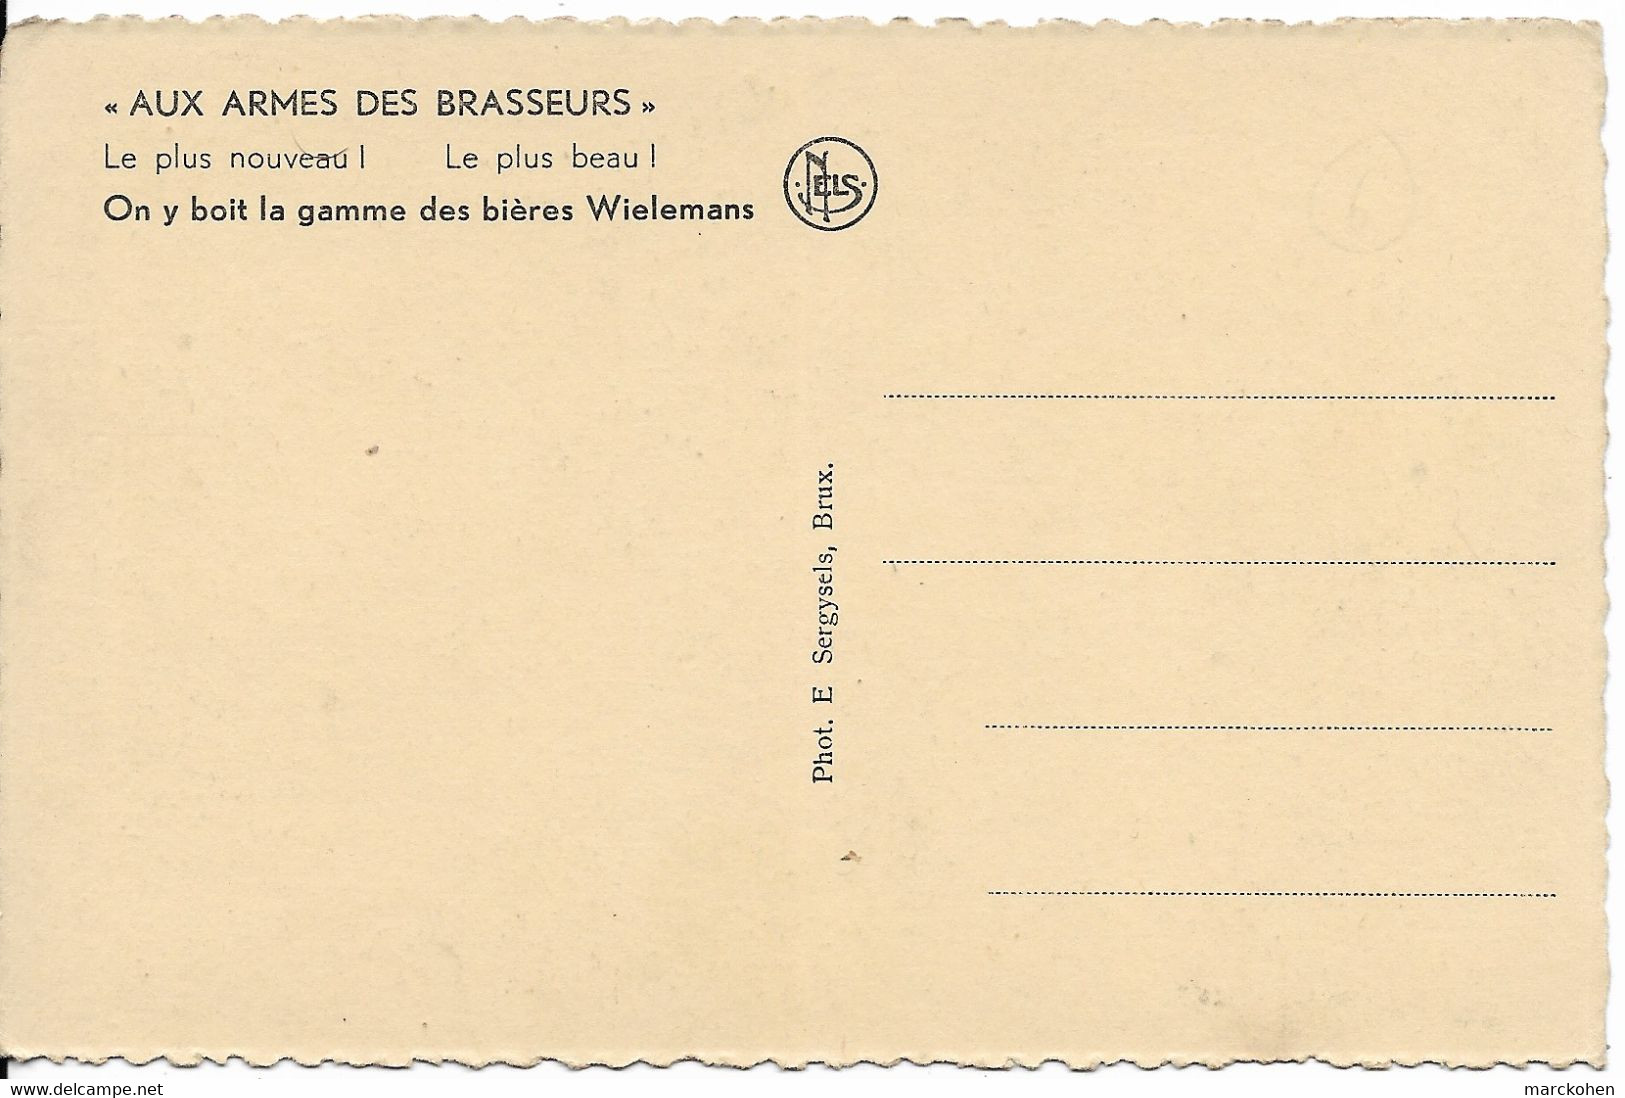 BRUXELLES (1000) - Boissons : "Aux Armes Des Brasseurs", Bvd Anspach 56-58, On Boit La Gamme Des Bières Wielemans. CPSM. - Cafés, Hôtels, Restaurants